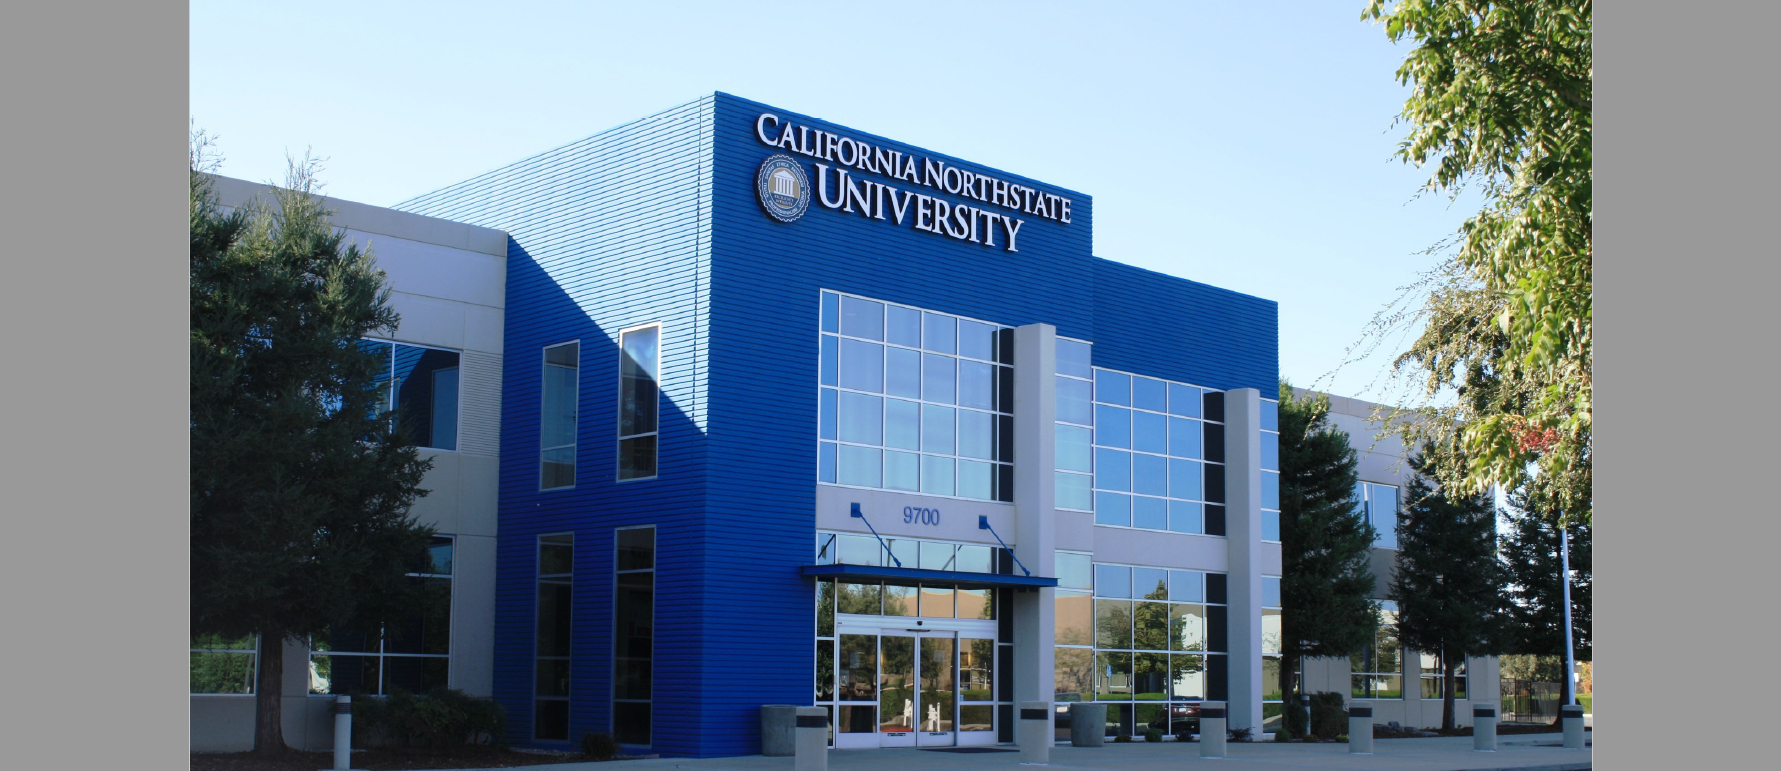 كلية الطب بجامعة كاليفورنيا الشمالية – California Northstate University College of Medicine